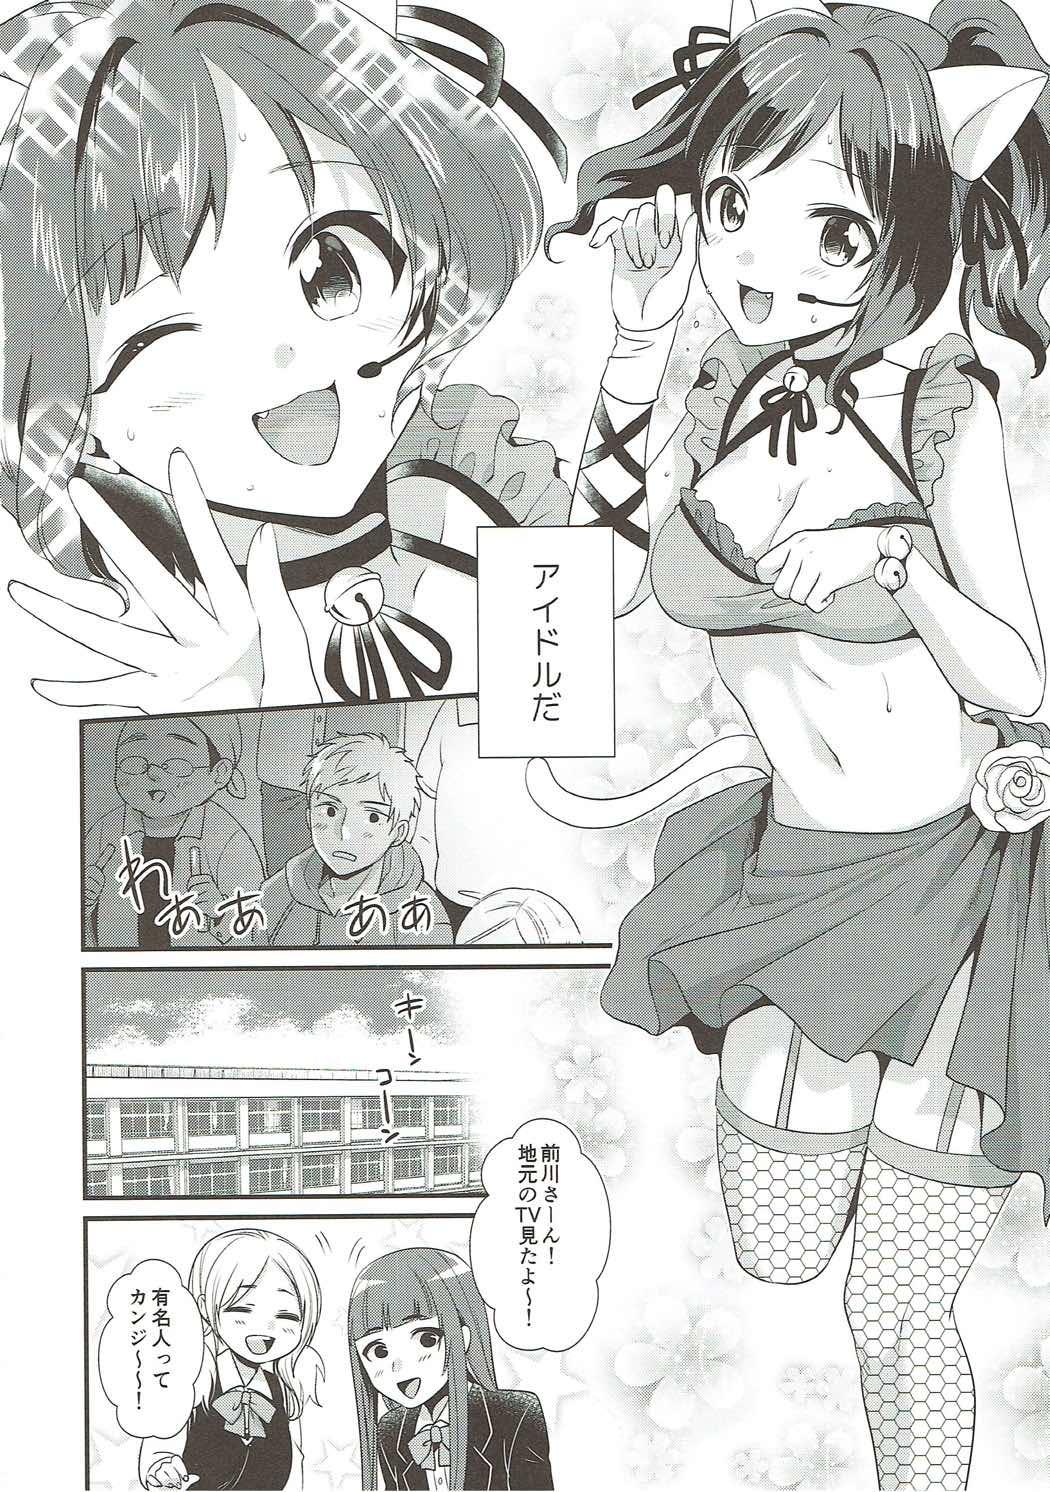 Twinks Tonari no Seki wa Maekawa Miku - The idolmaster Publico - Page 5